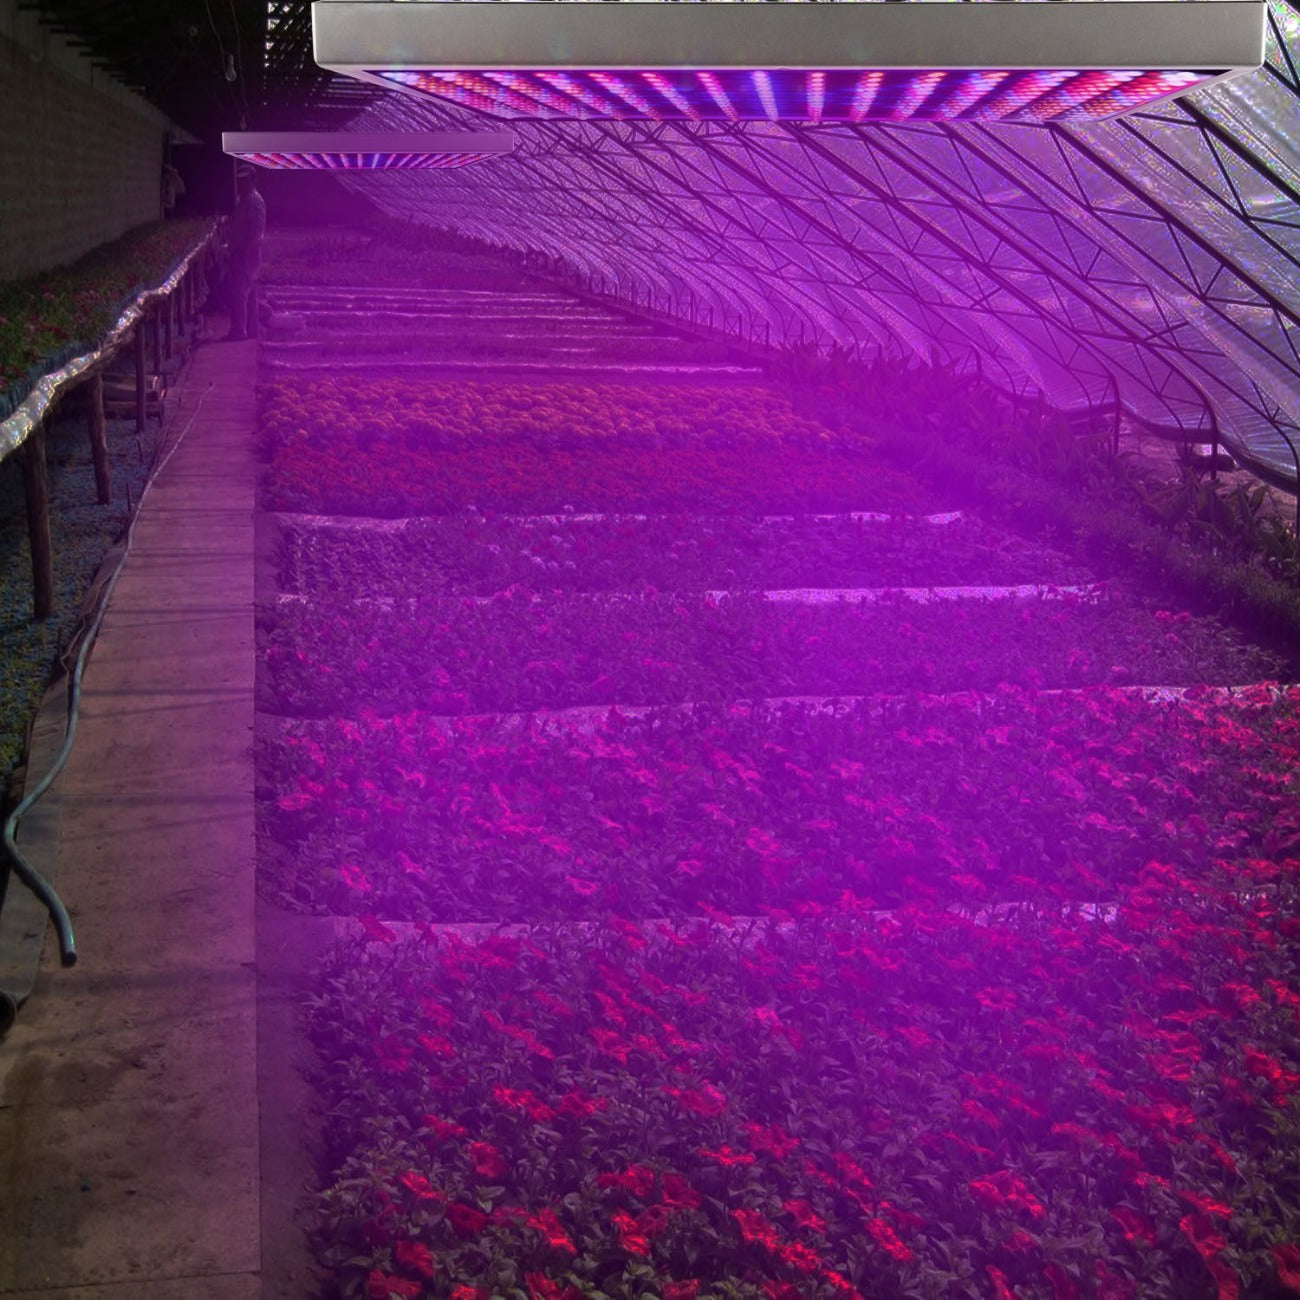  Full Spectrum LED Grow Lights for Plants